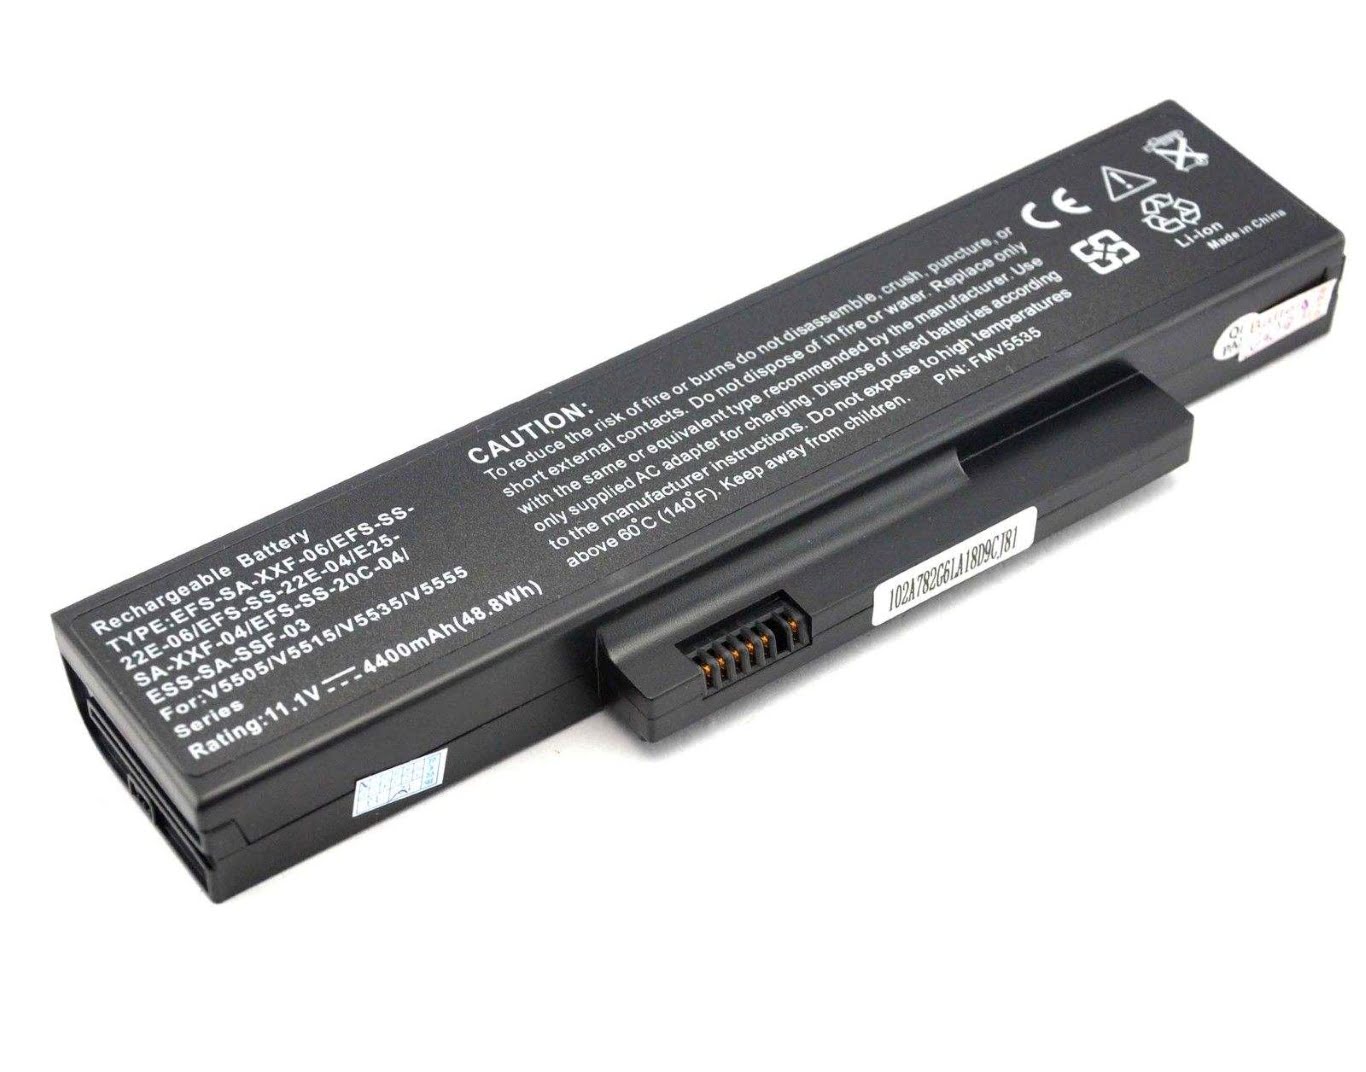 Fujitsu Fox-efs-sa-22f-06, Fox-efs-sa-xxf-06 Laptop Battery For Esprimo Mobile V5515, Esprimo Mobile V5535 replacement